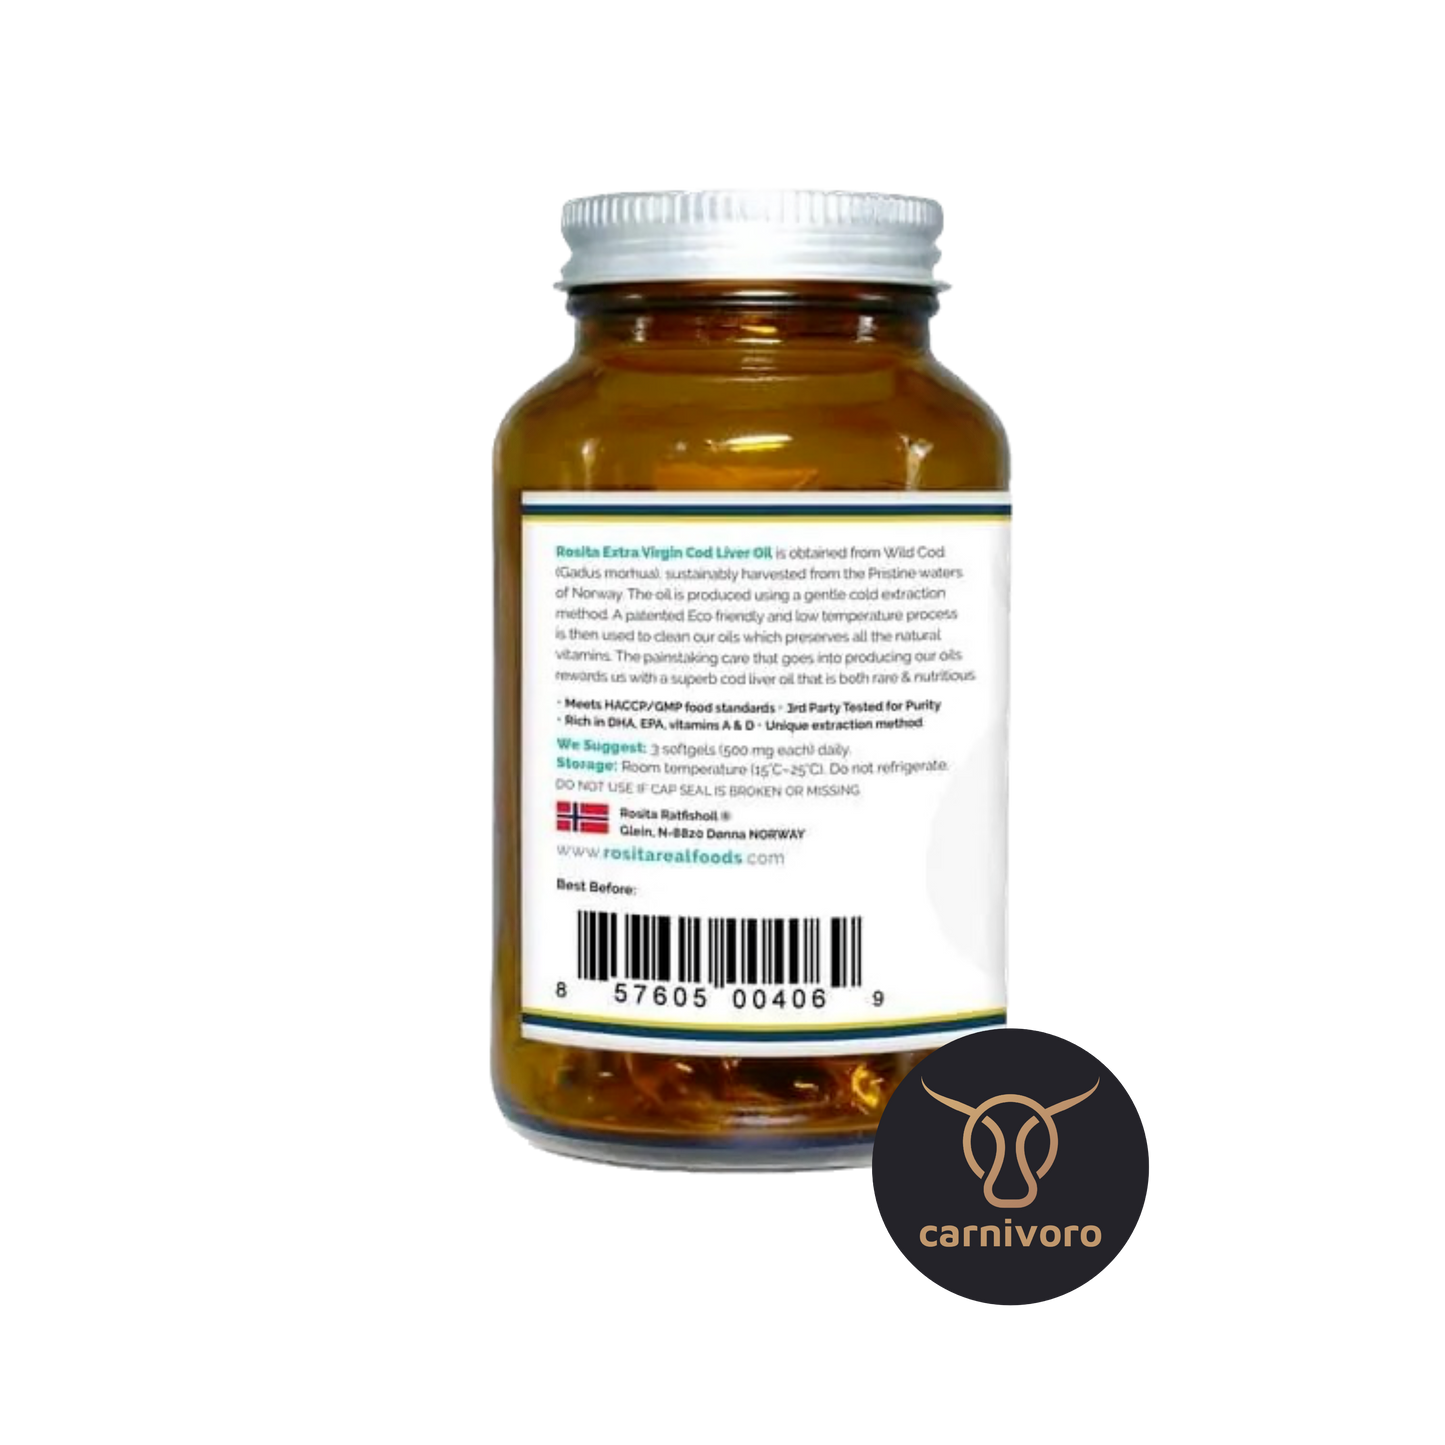 Rosita» Vitamina D y Omega 3 (aceite de pescado)» Cápsulas